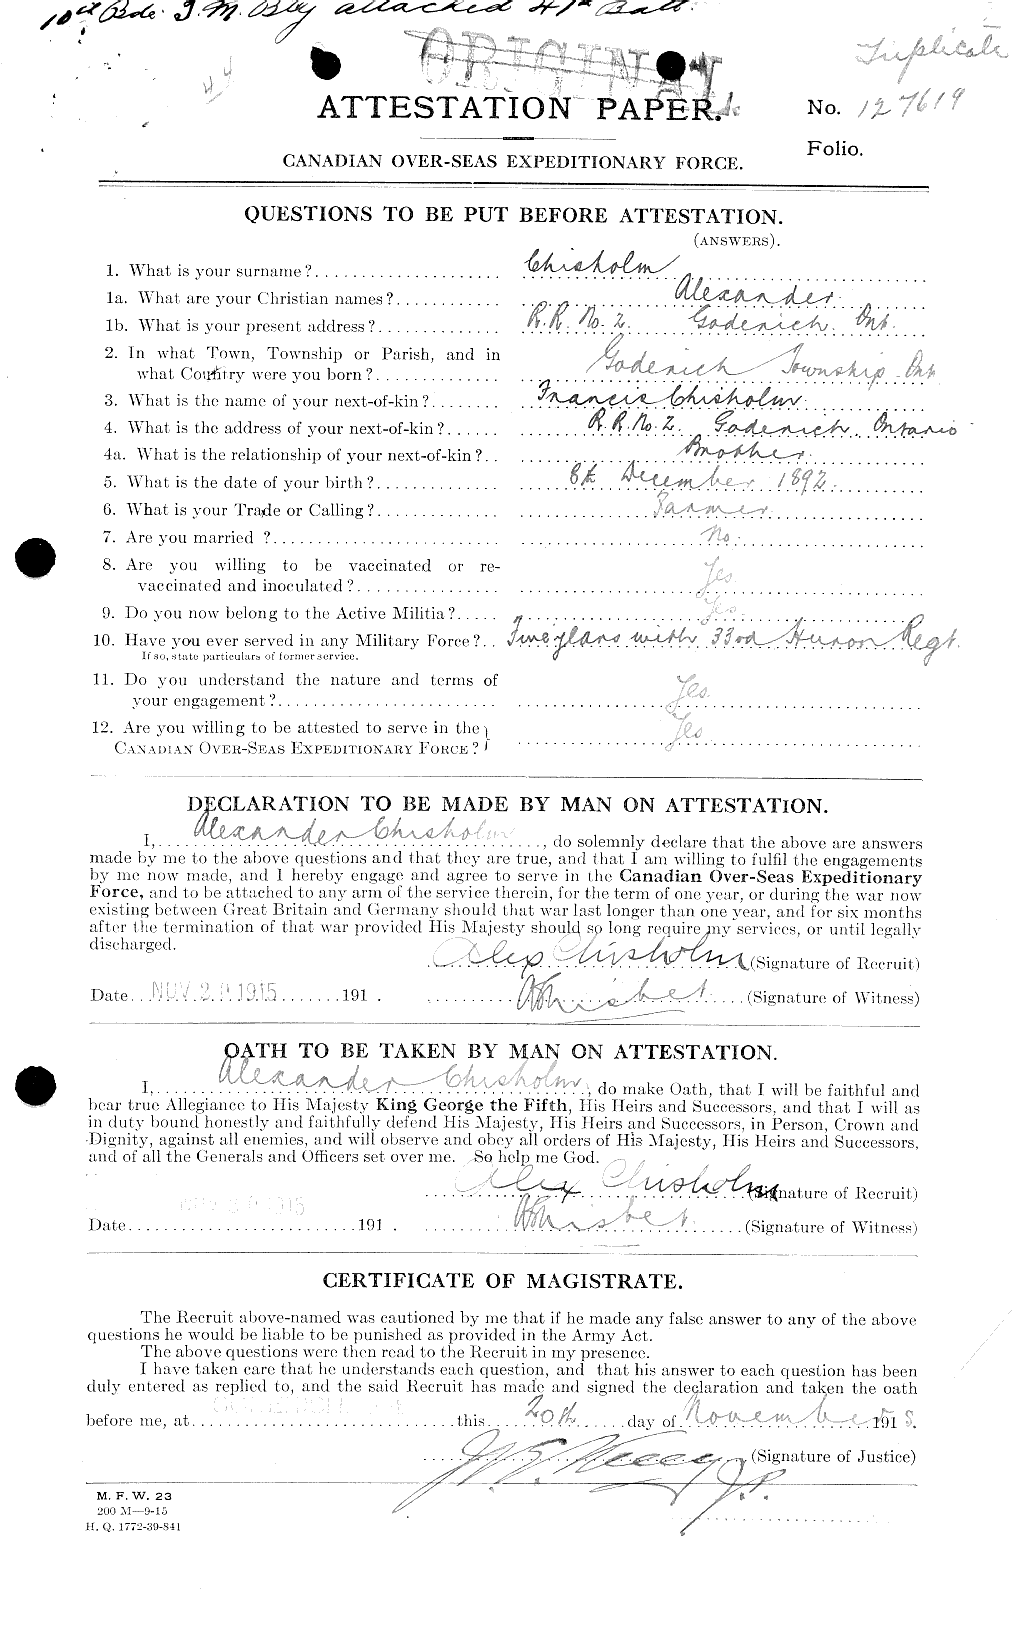 Dossiers du Personnel de la Première Guerre mondiale - CEC 018183a